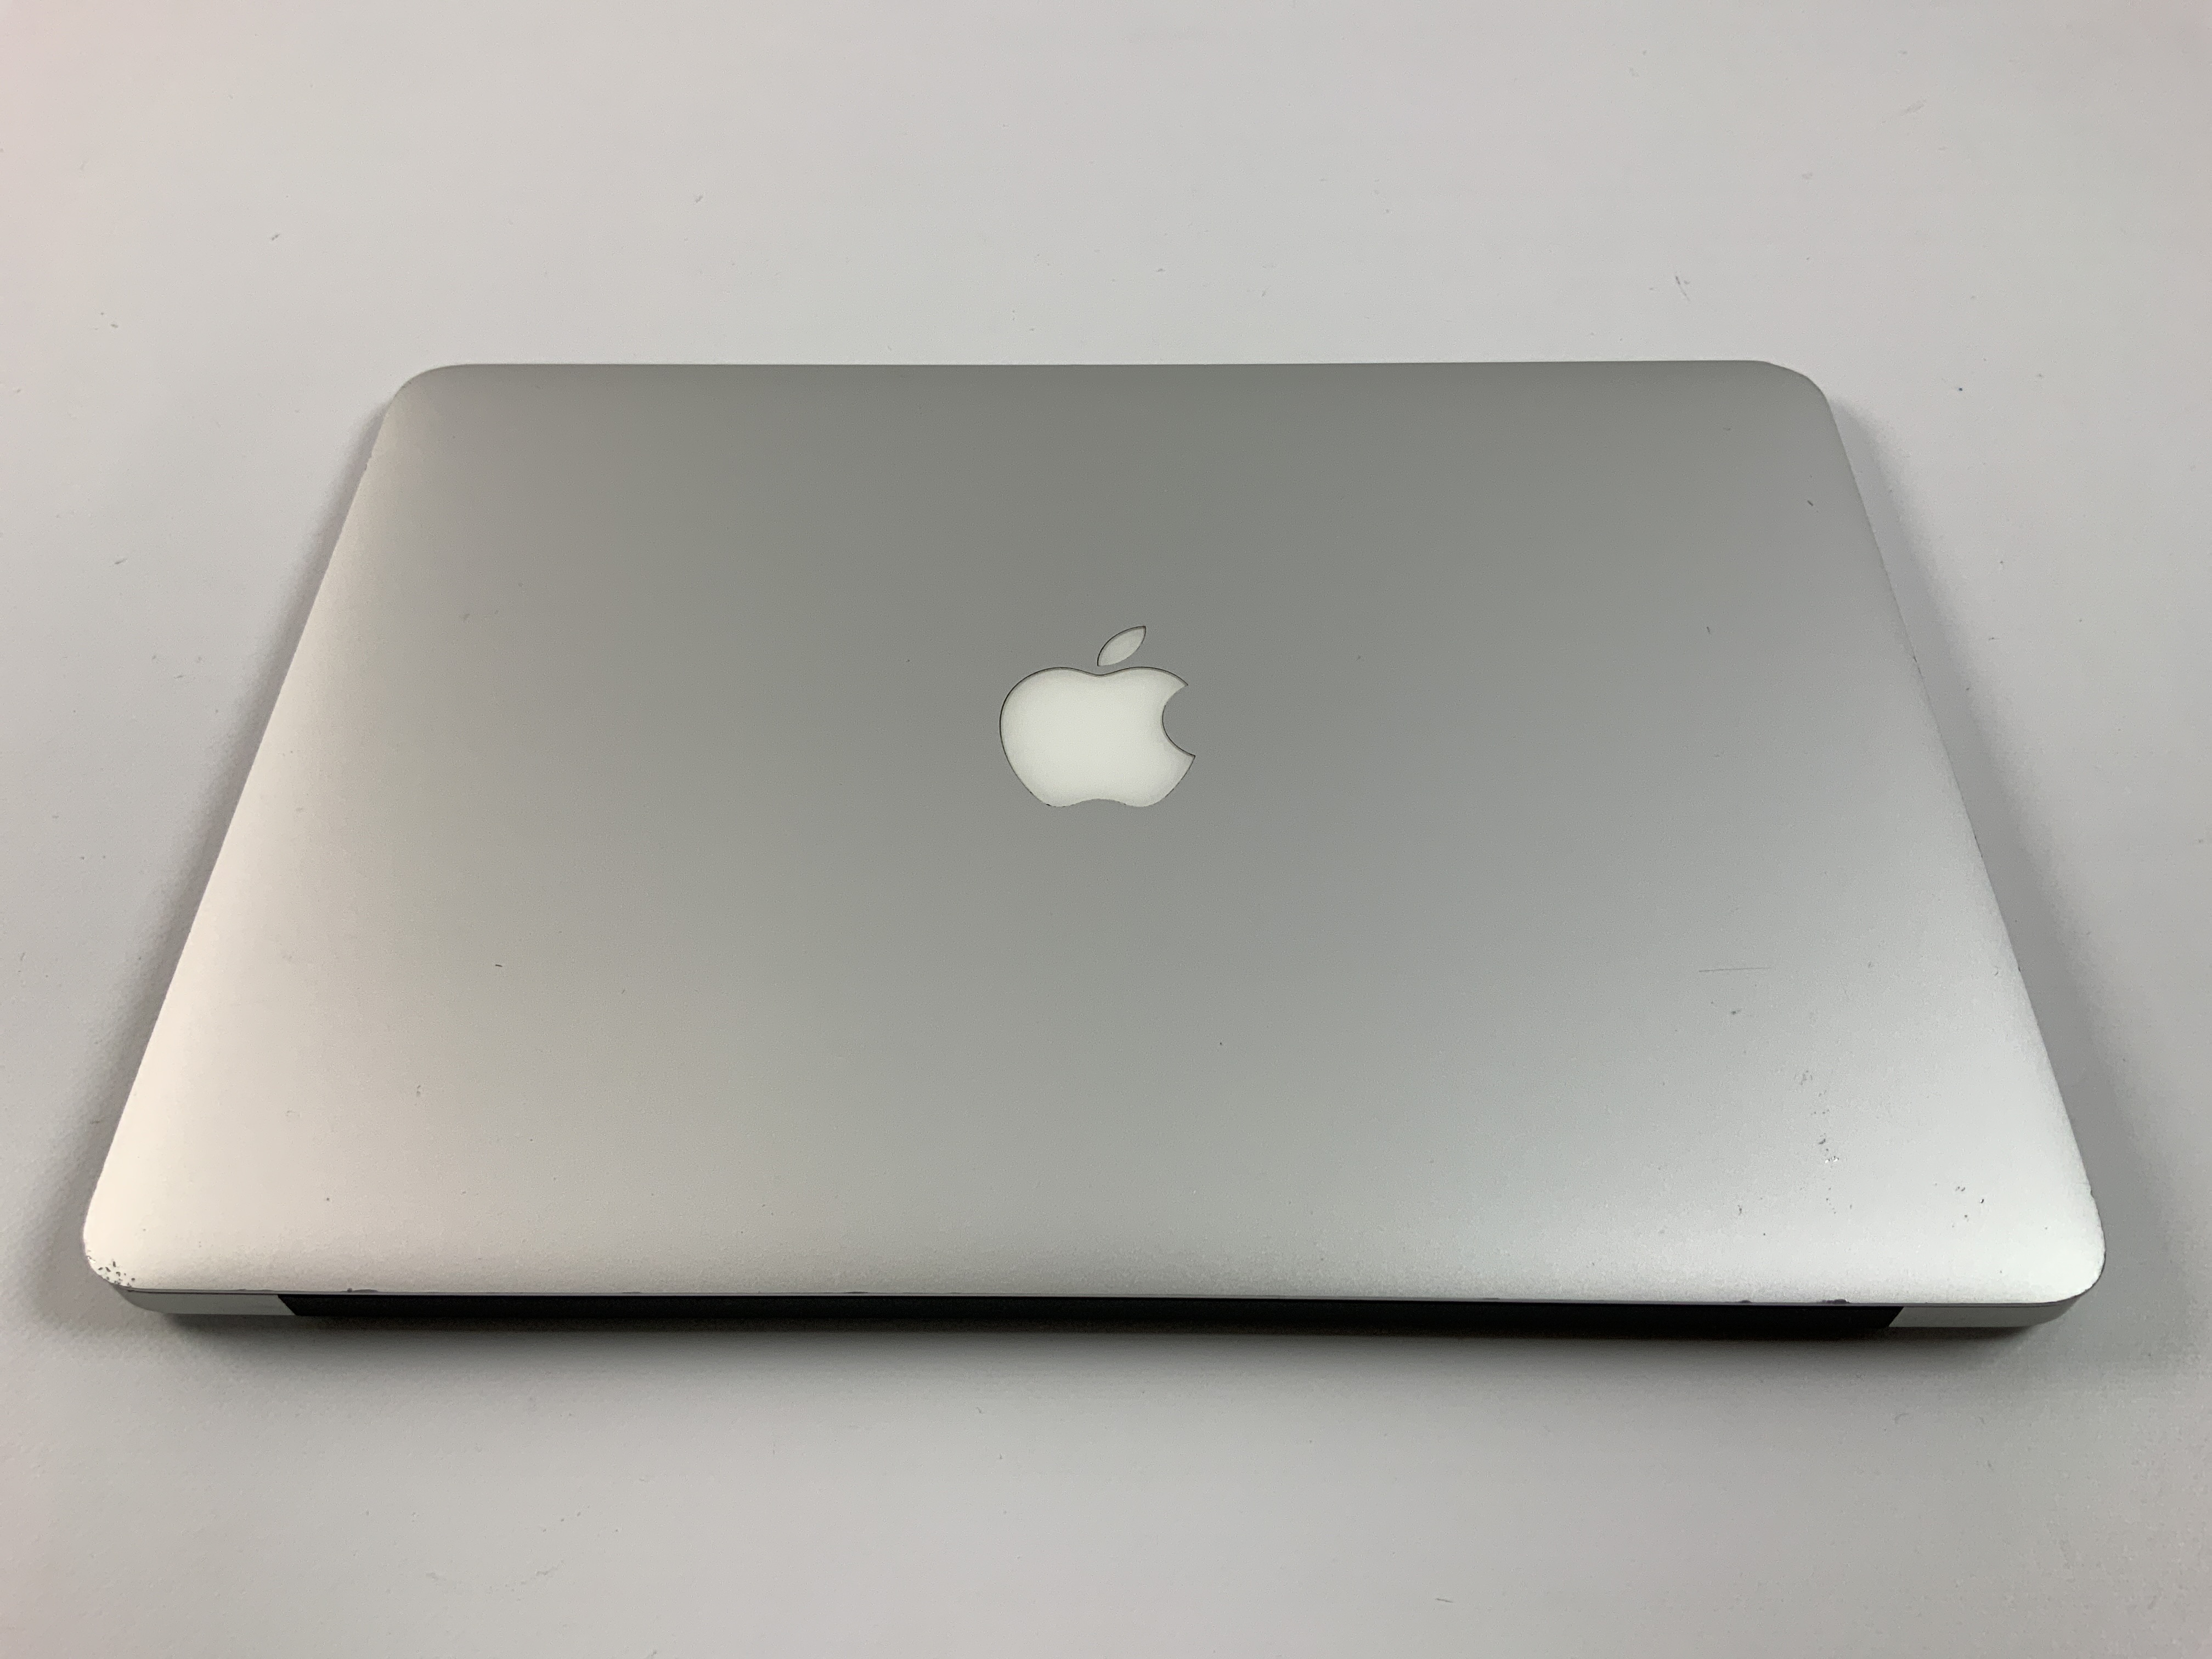 MacBook Air 13" Mid 2017 (Intel Core i5 1.8 GHz 8 GB RAM 256 GB SSD), Intel Core i5 1.8 GHz, 8 GB RAM, 256 GB SSD, Kuva 2